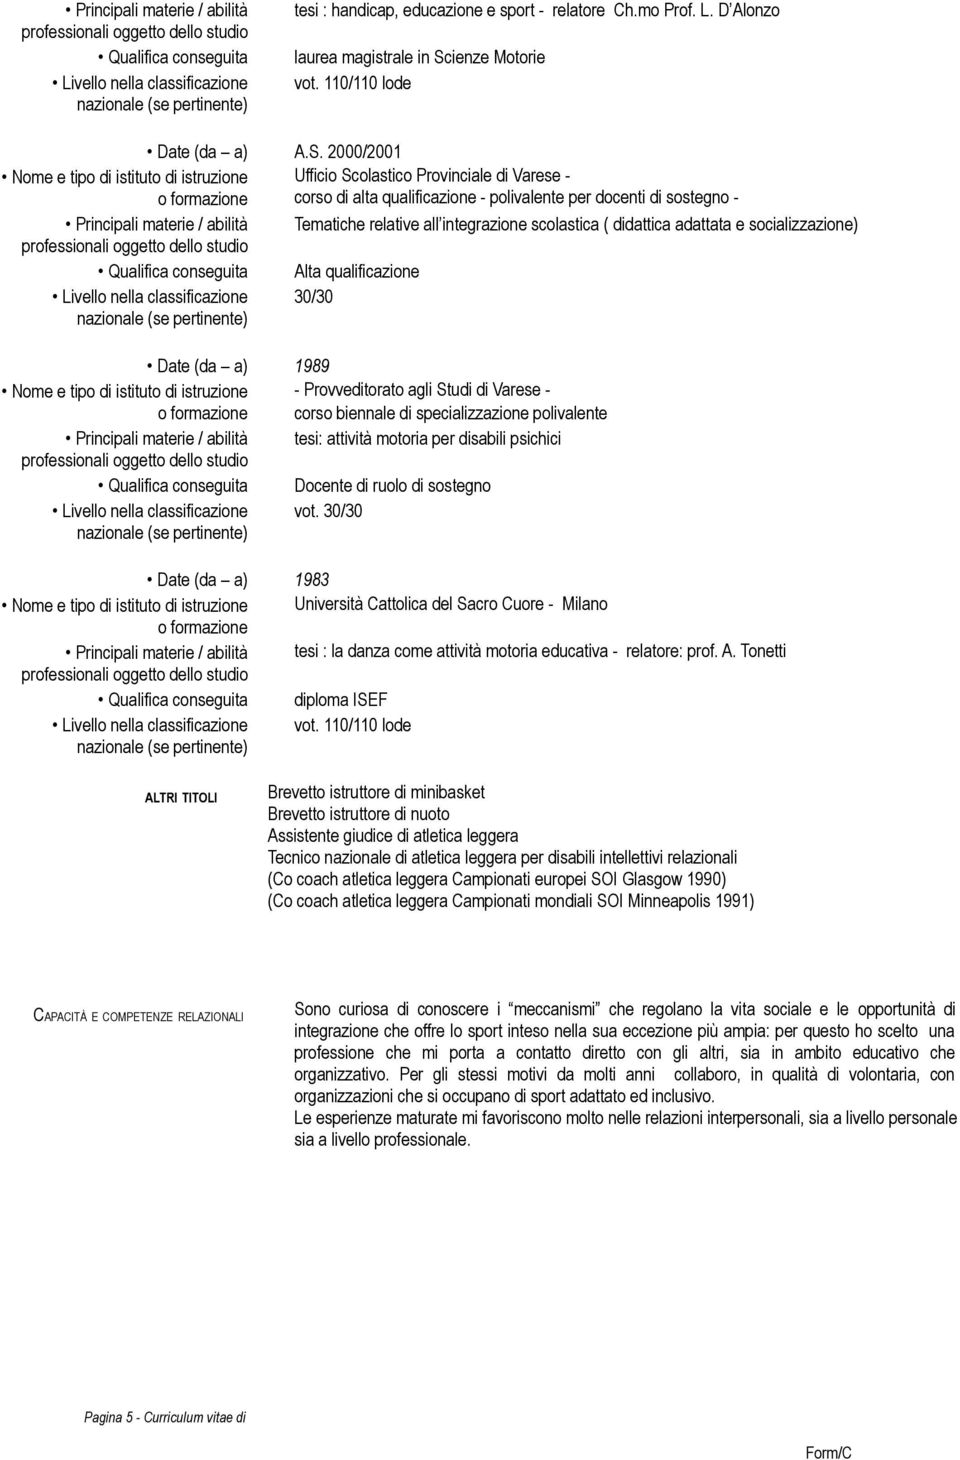 2000/2001 Nome e tipo di istituto di istruzione Ufficio Scolastico Provinciale di Varese - corso di alta qualificazione - polivalente per docenti di sostegno - Principali materie / abilità Tematiche